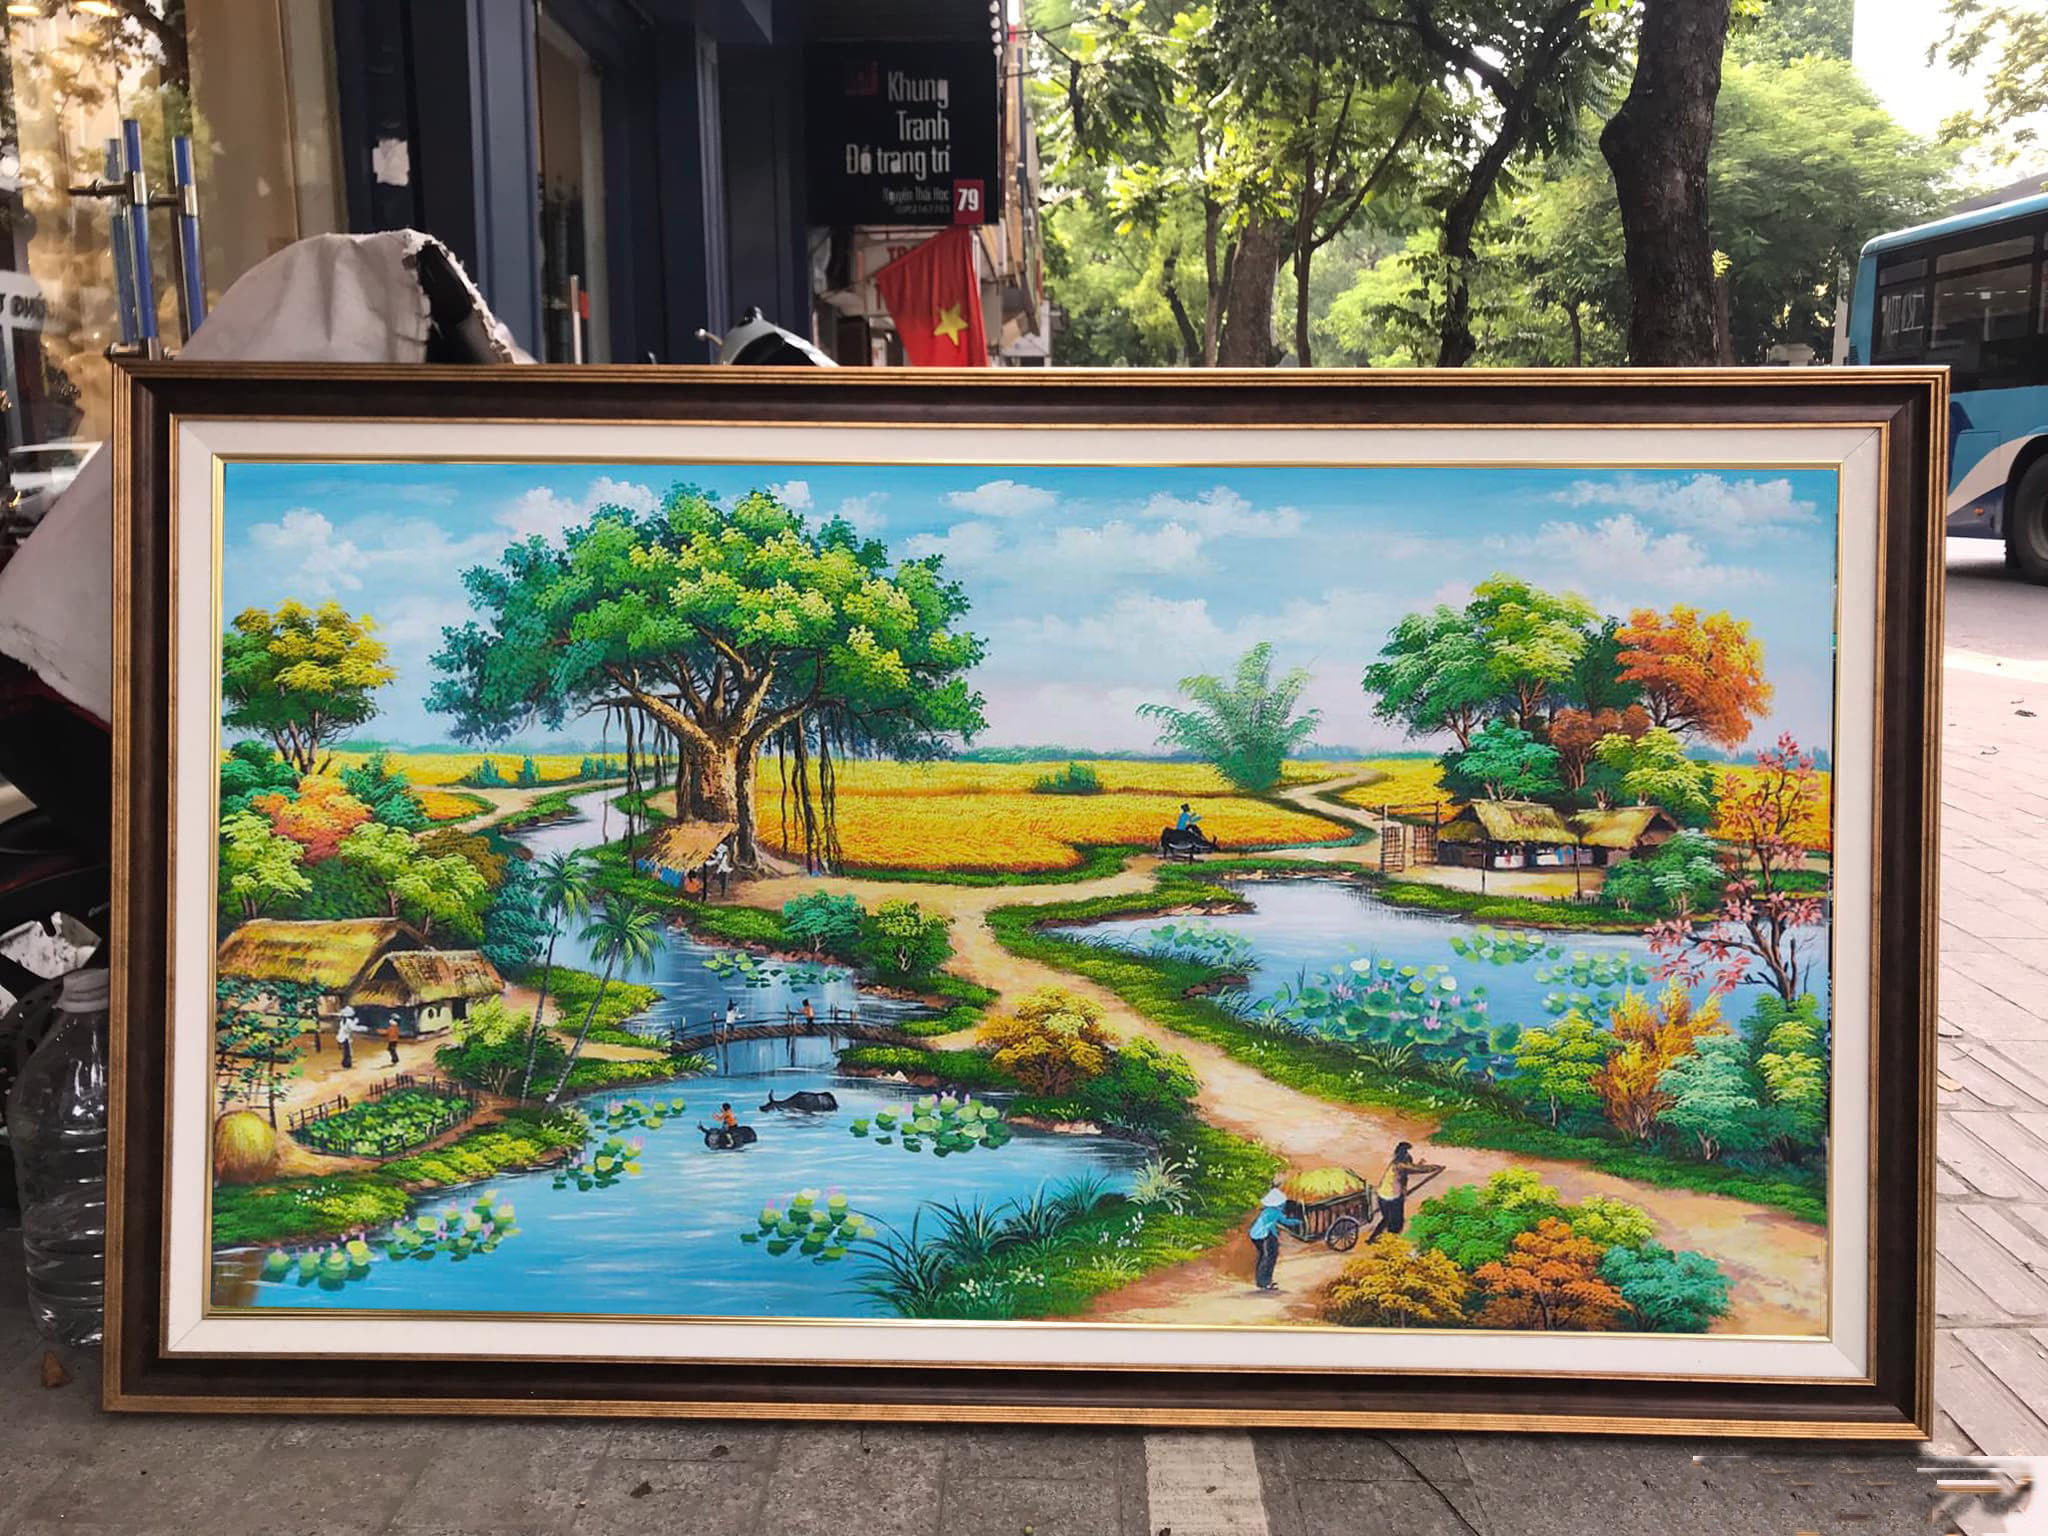 Vẽ tranh phong cảnh đồng quê Việt Nam là một trải nghiệm thú vị. Bạn sẽ được khám phá vẻ đẹp thiên nhiên nơi đồng cỏ, làng quê xinh đẹp, bức tranh sẽ giúp bạn có những kỷ niệm đáng nhớ về quê hương mình yêu thương.